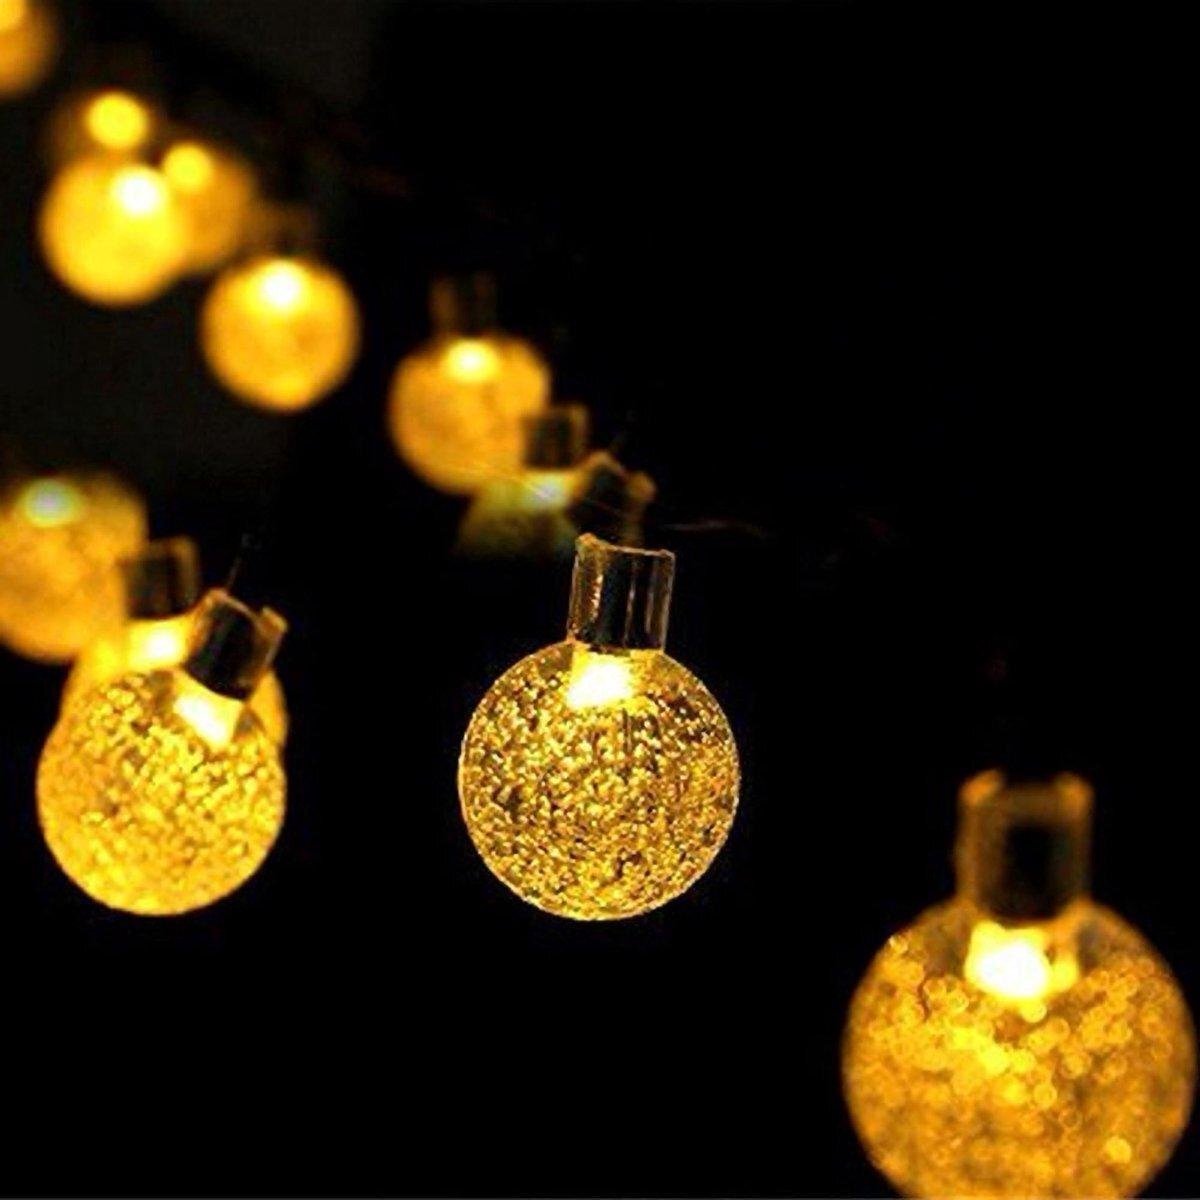 Yurda Tuinverlichting - 50 led lampjes op een snoer van 7 meter - Op zonne-energie - Kerstverlichting buiten - Kerst sfeerlampjes - Kerstversiering buiten - Kerstverlichting led